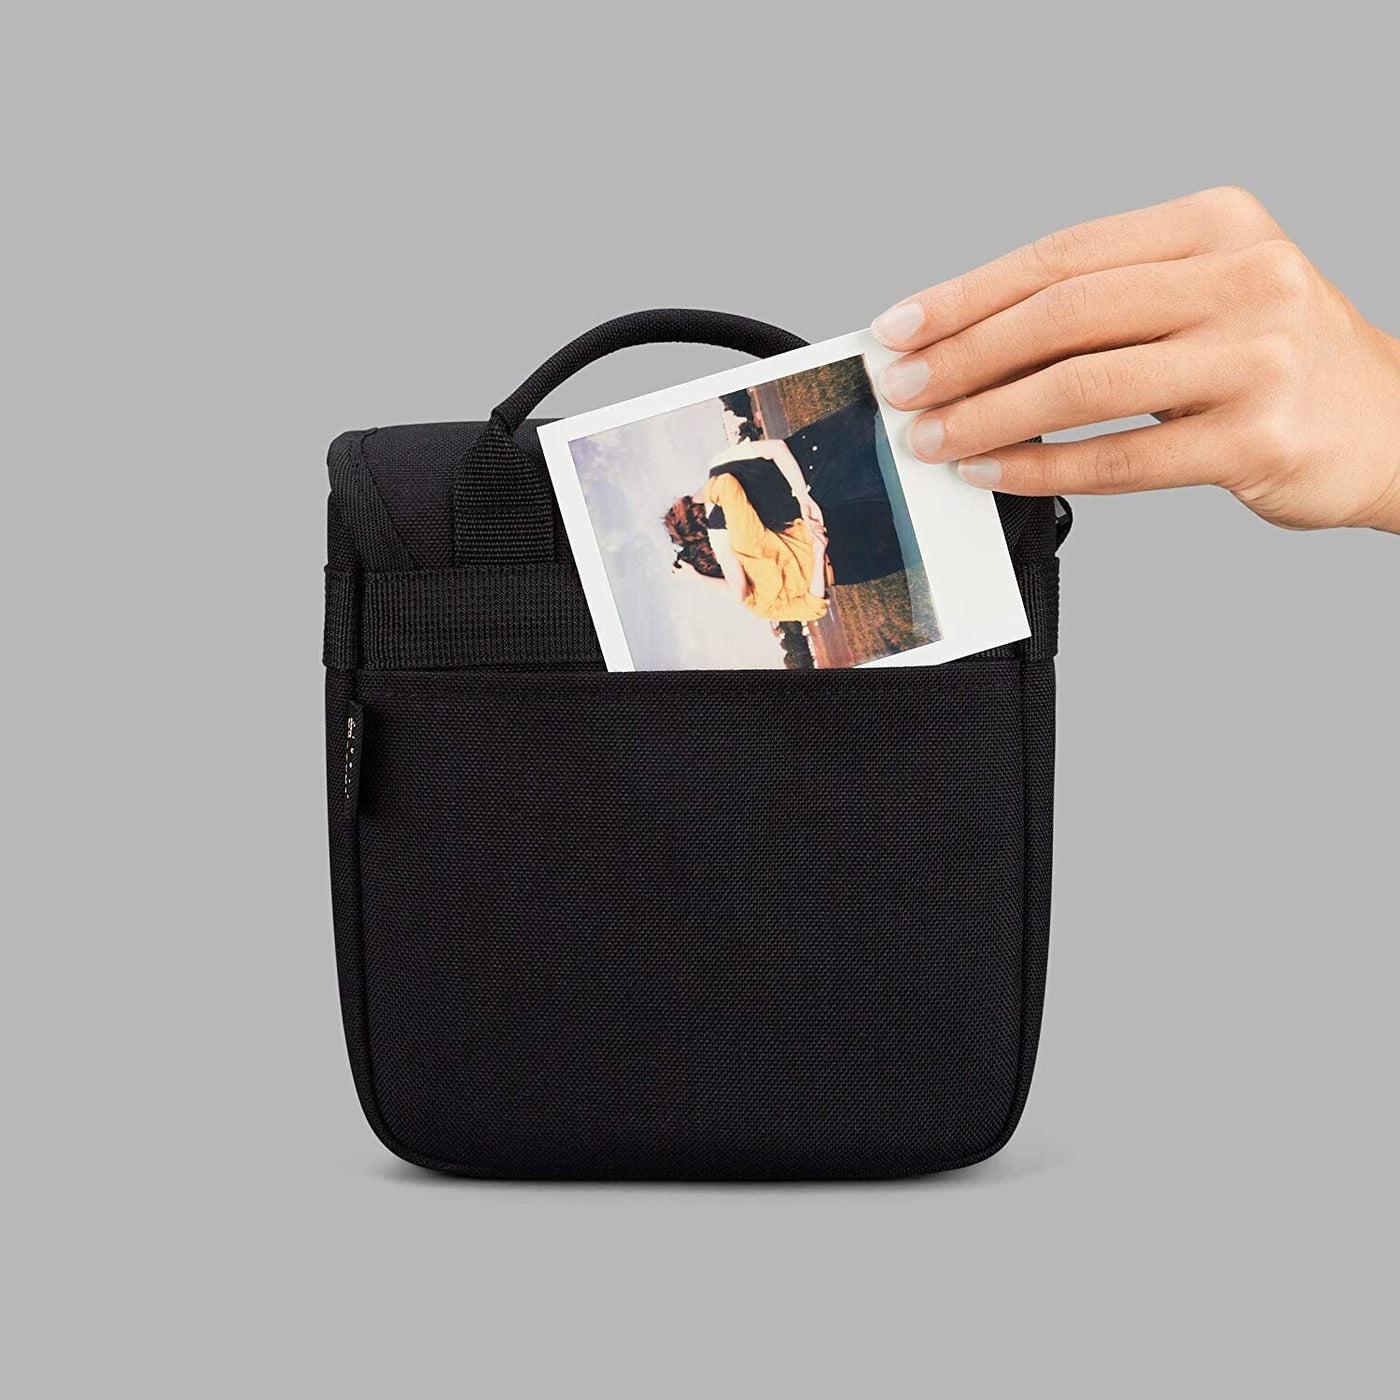 Polaroid Originals Box Camera Bag, Black (6056)